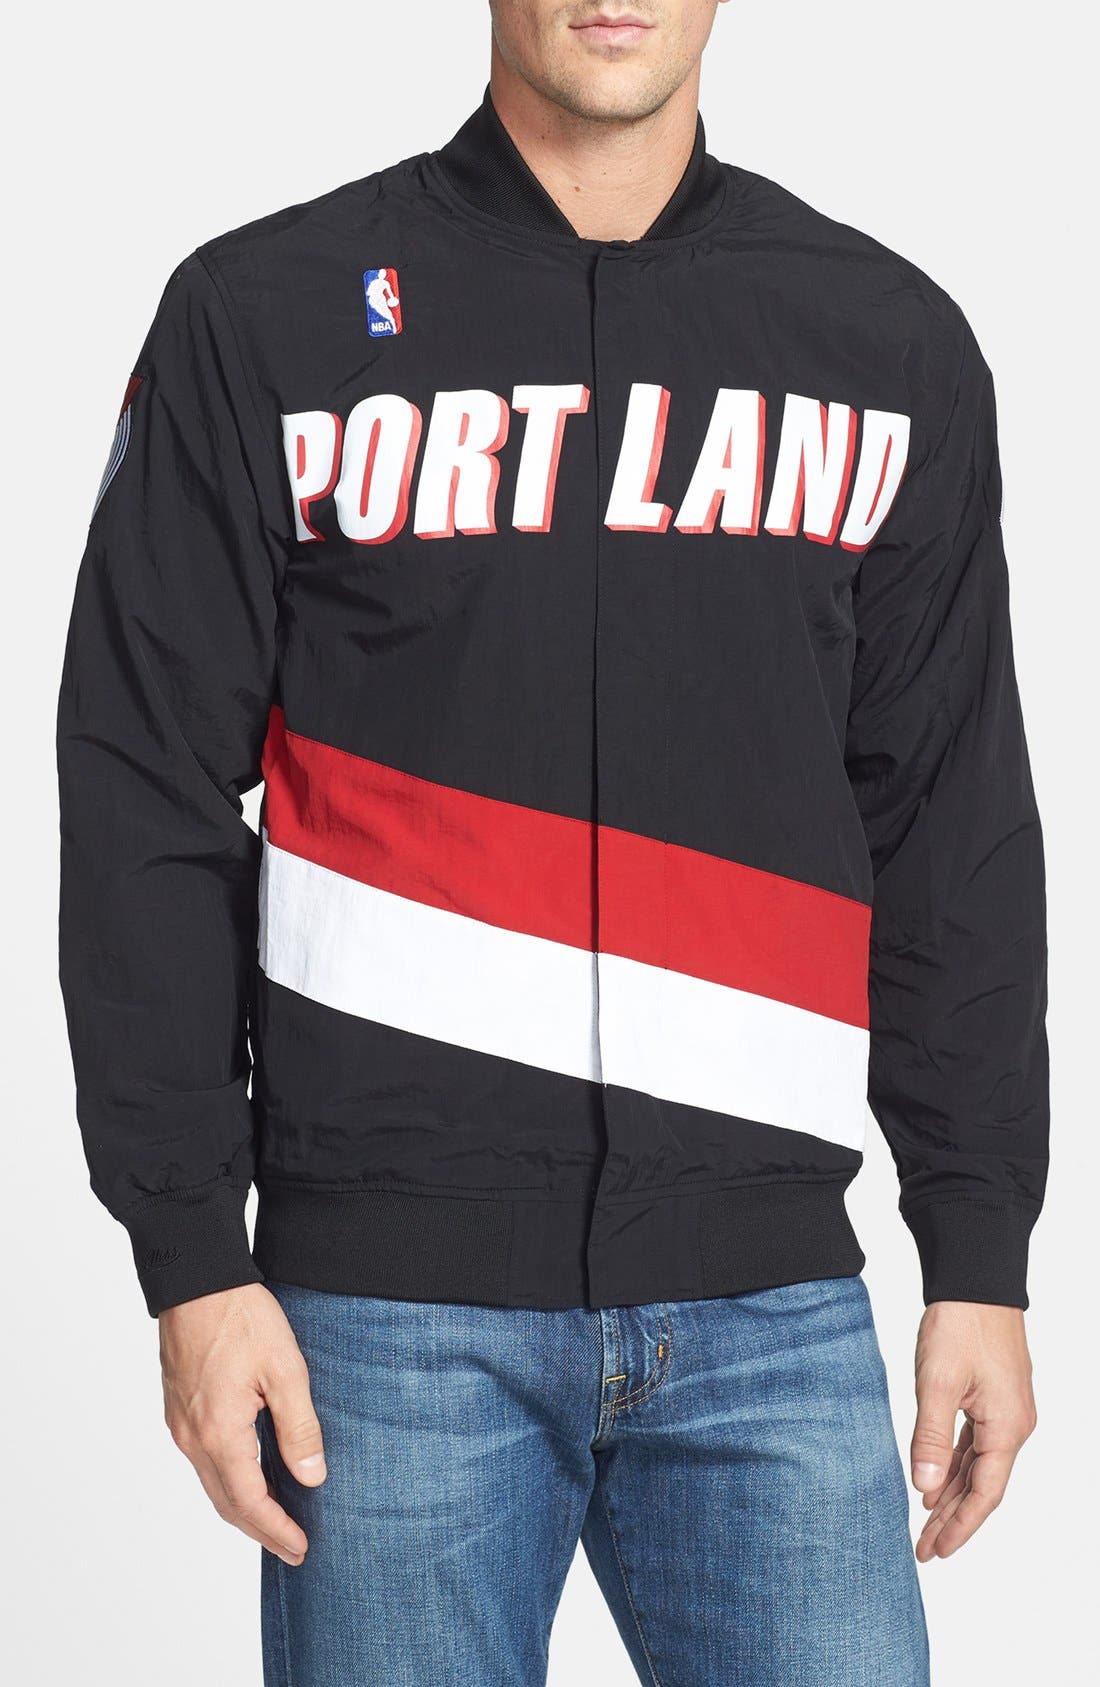 Portland Trail Blazers' Warm Up Jacket 